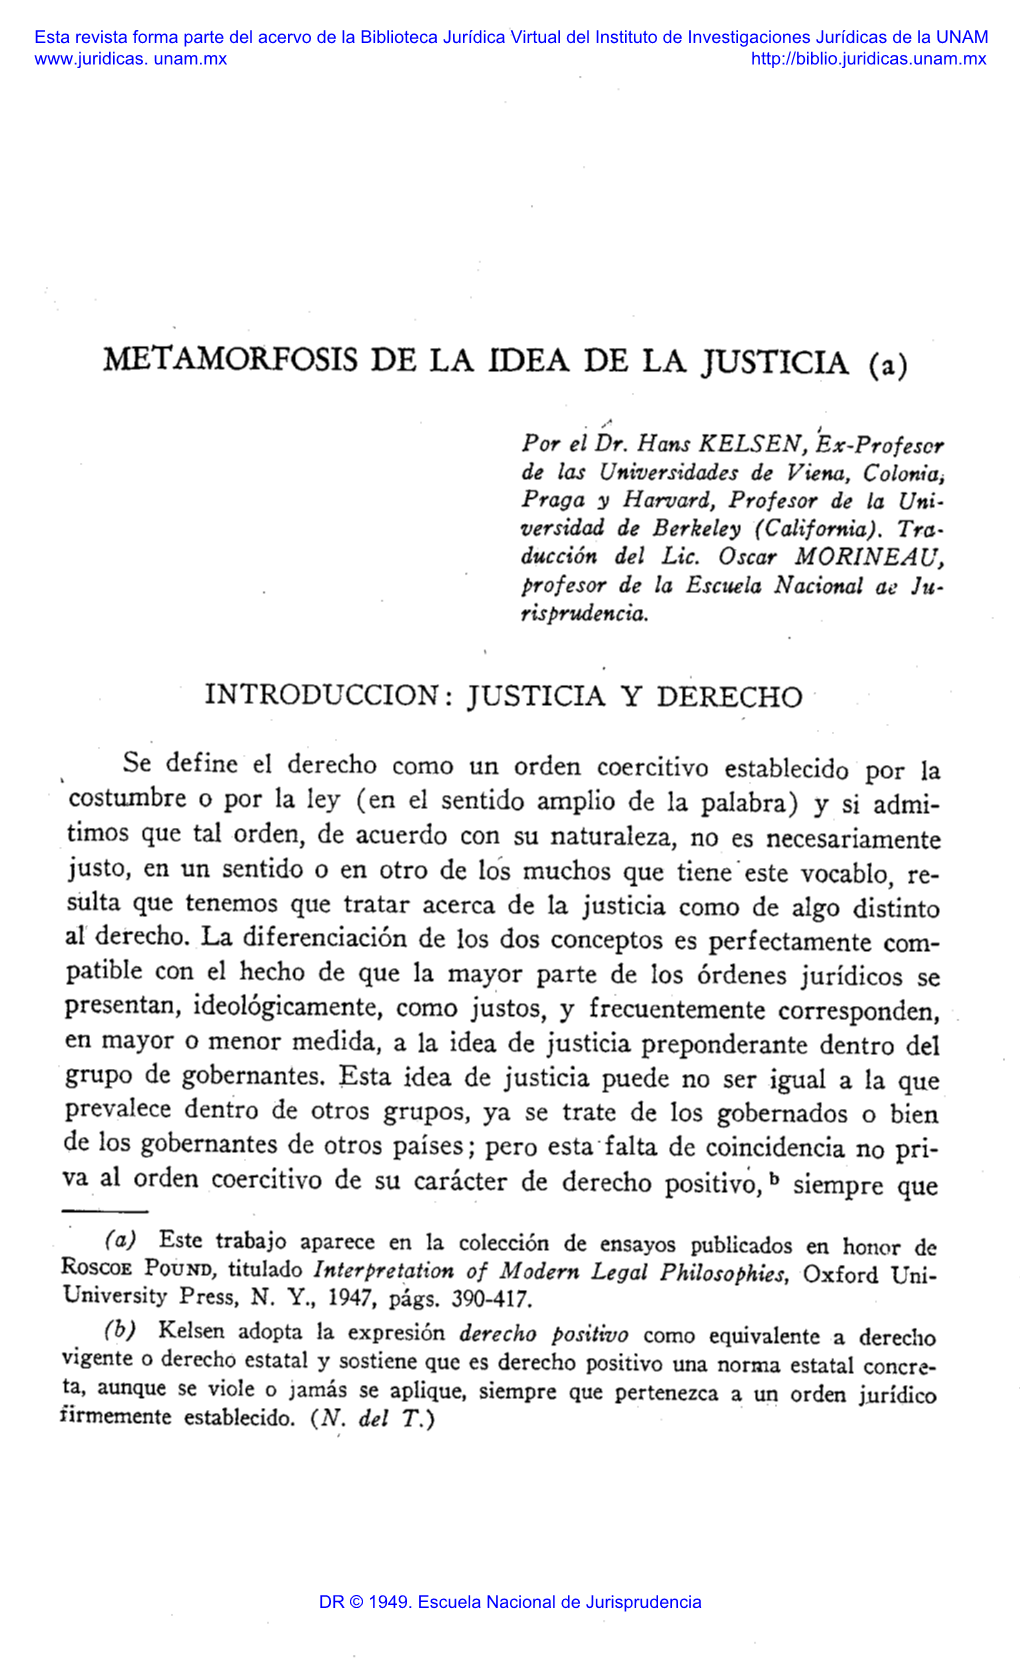 METAMORFOSIS DE LA IDEA DE LA JUSTICIA (A) . INTRODUCCION